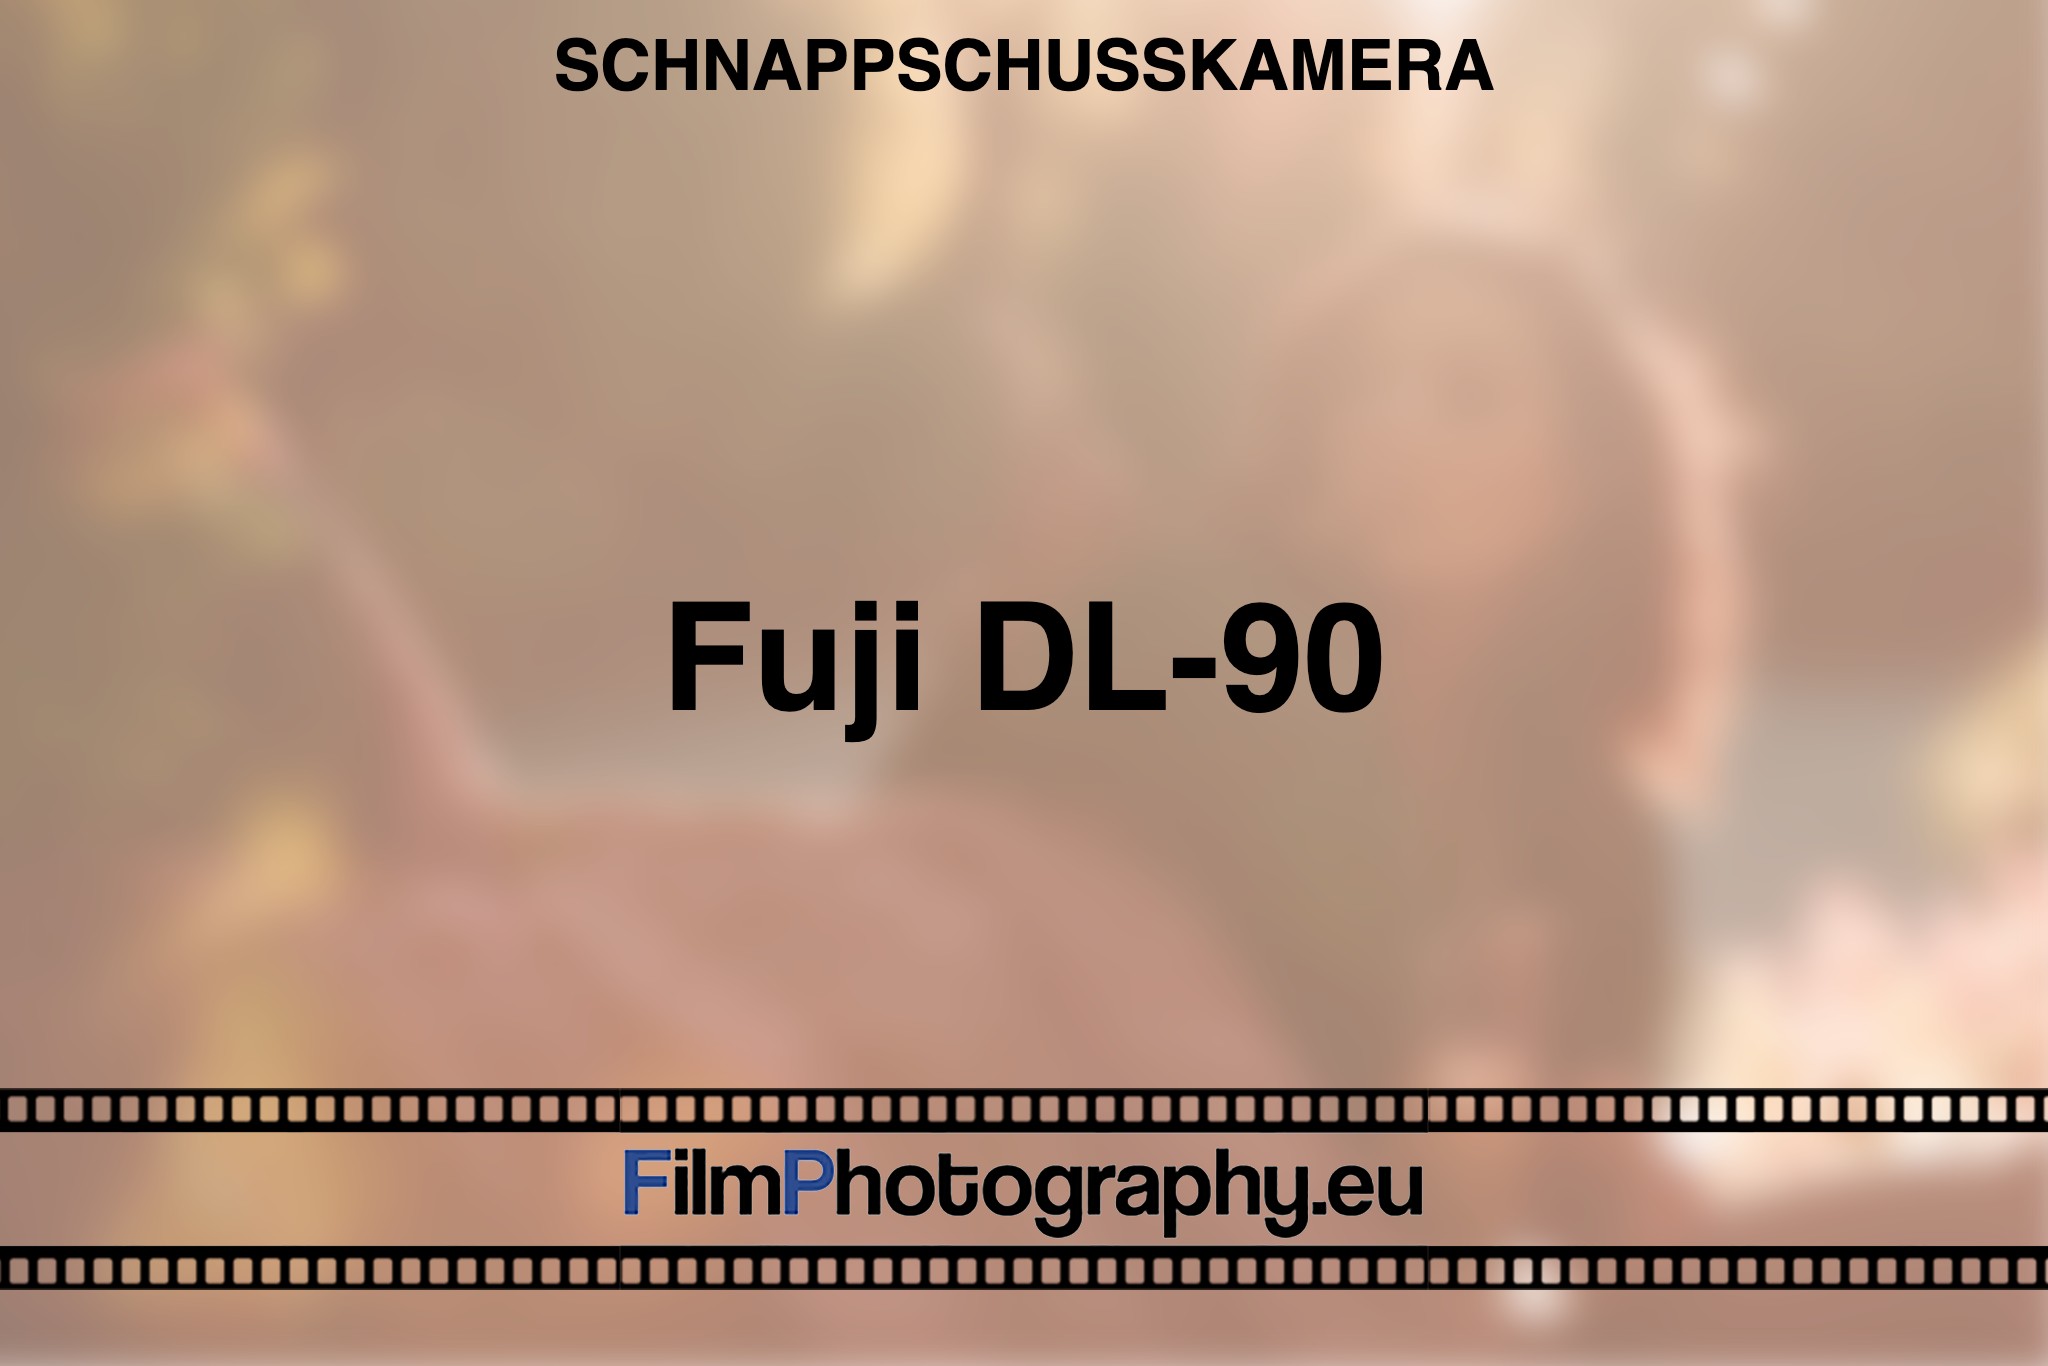 fuji-dl-90-schnappschusskamera-bnv